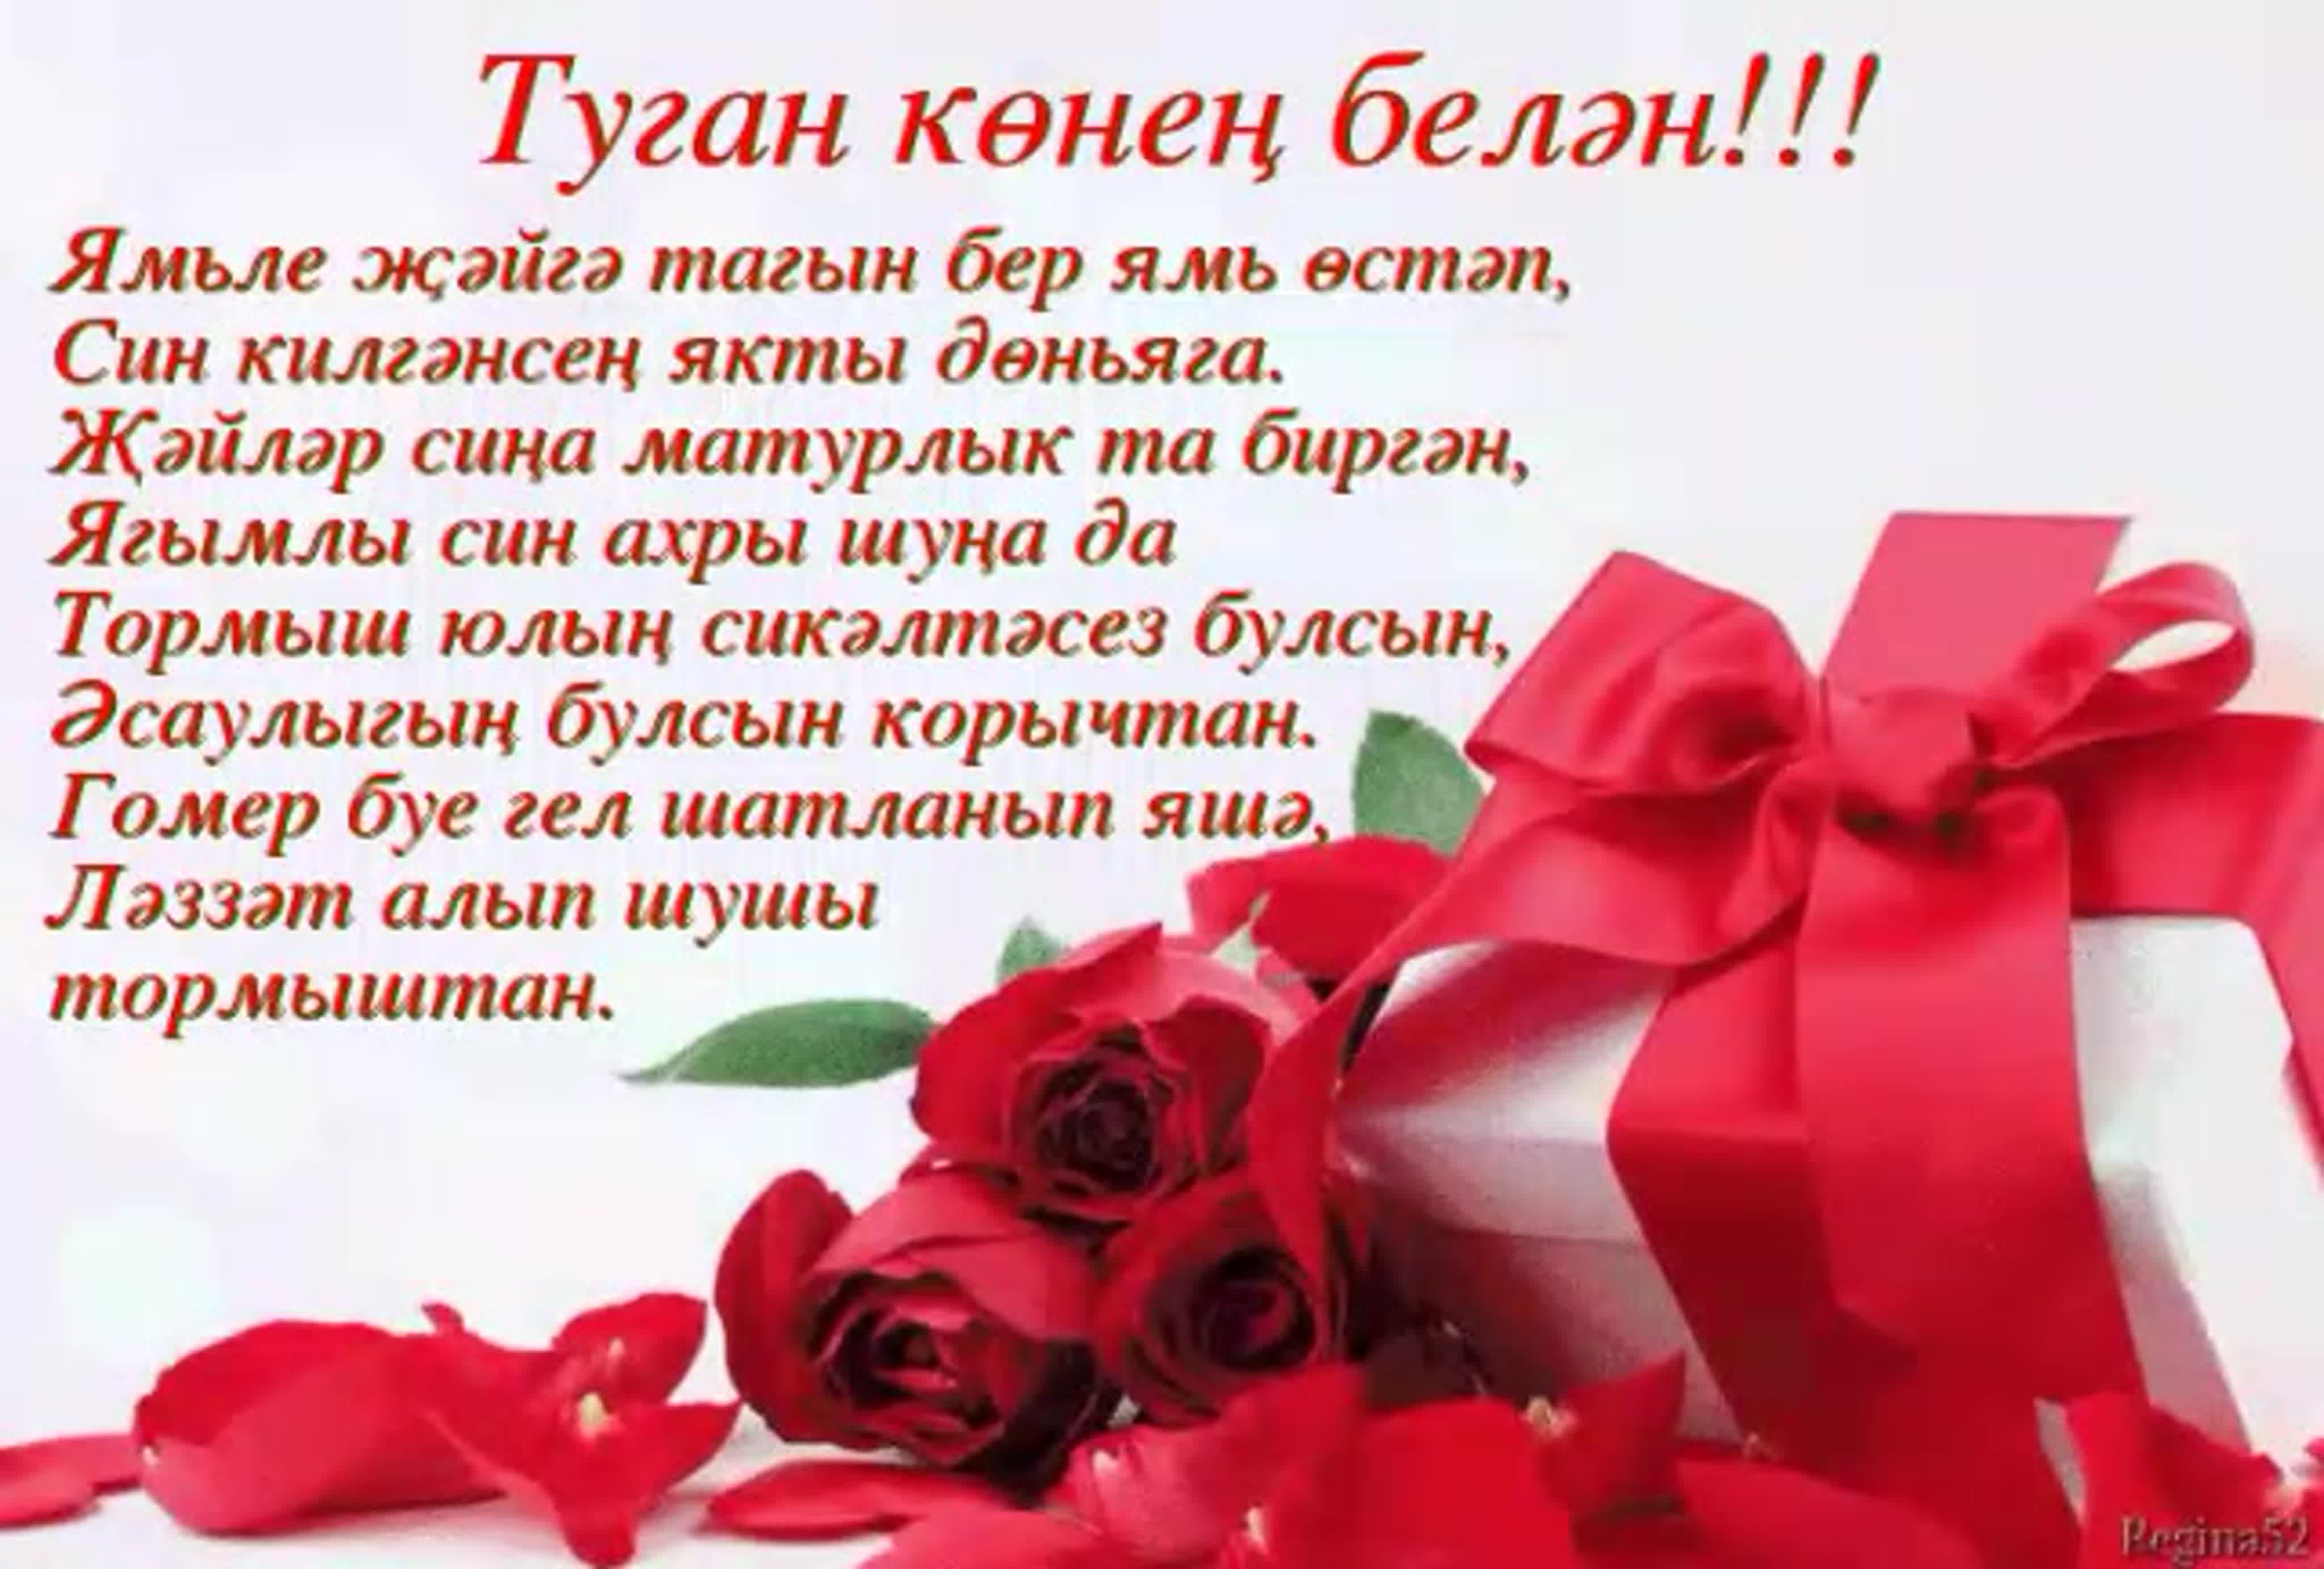 Татарские песни поздравления с днем рождения